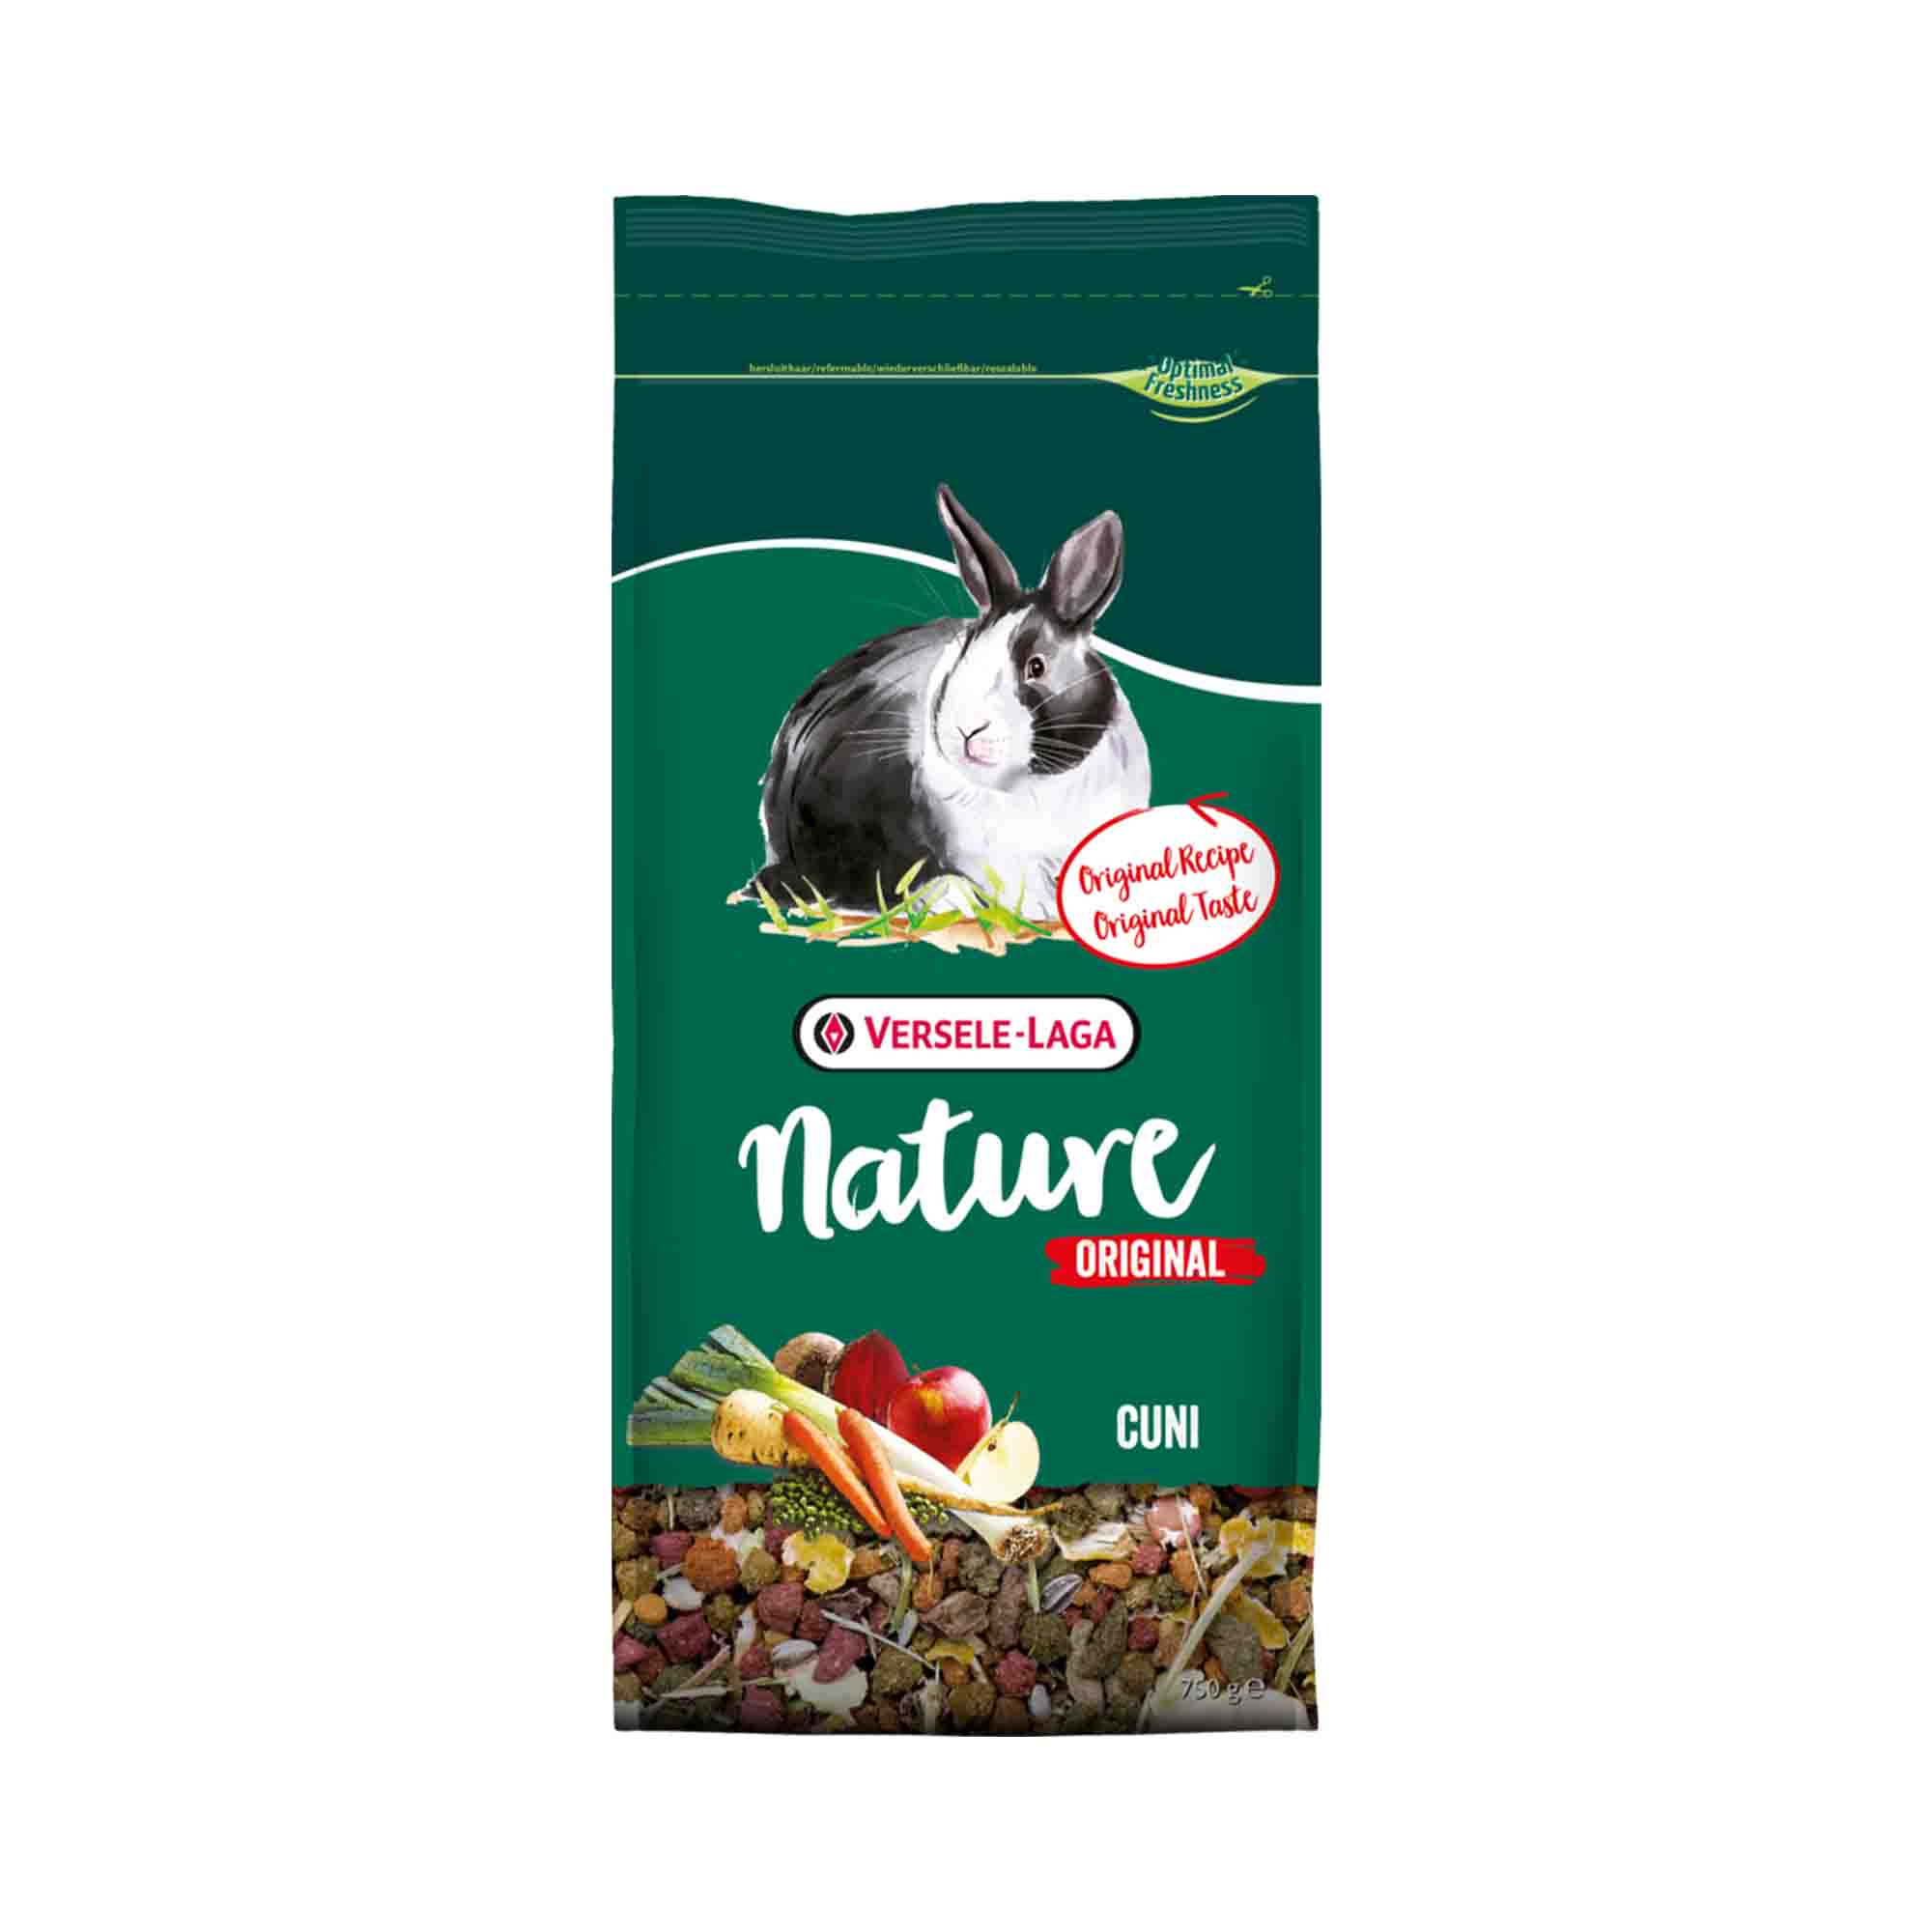 Versele-Laga Nature Original Cuni rabbit food